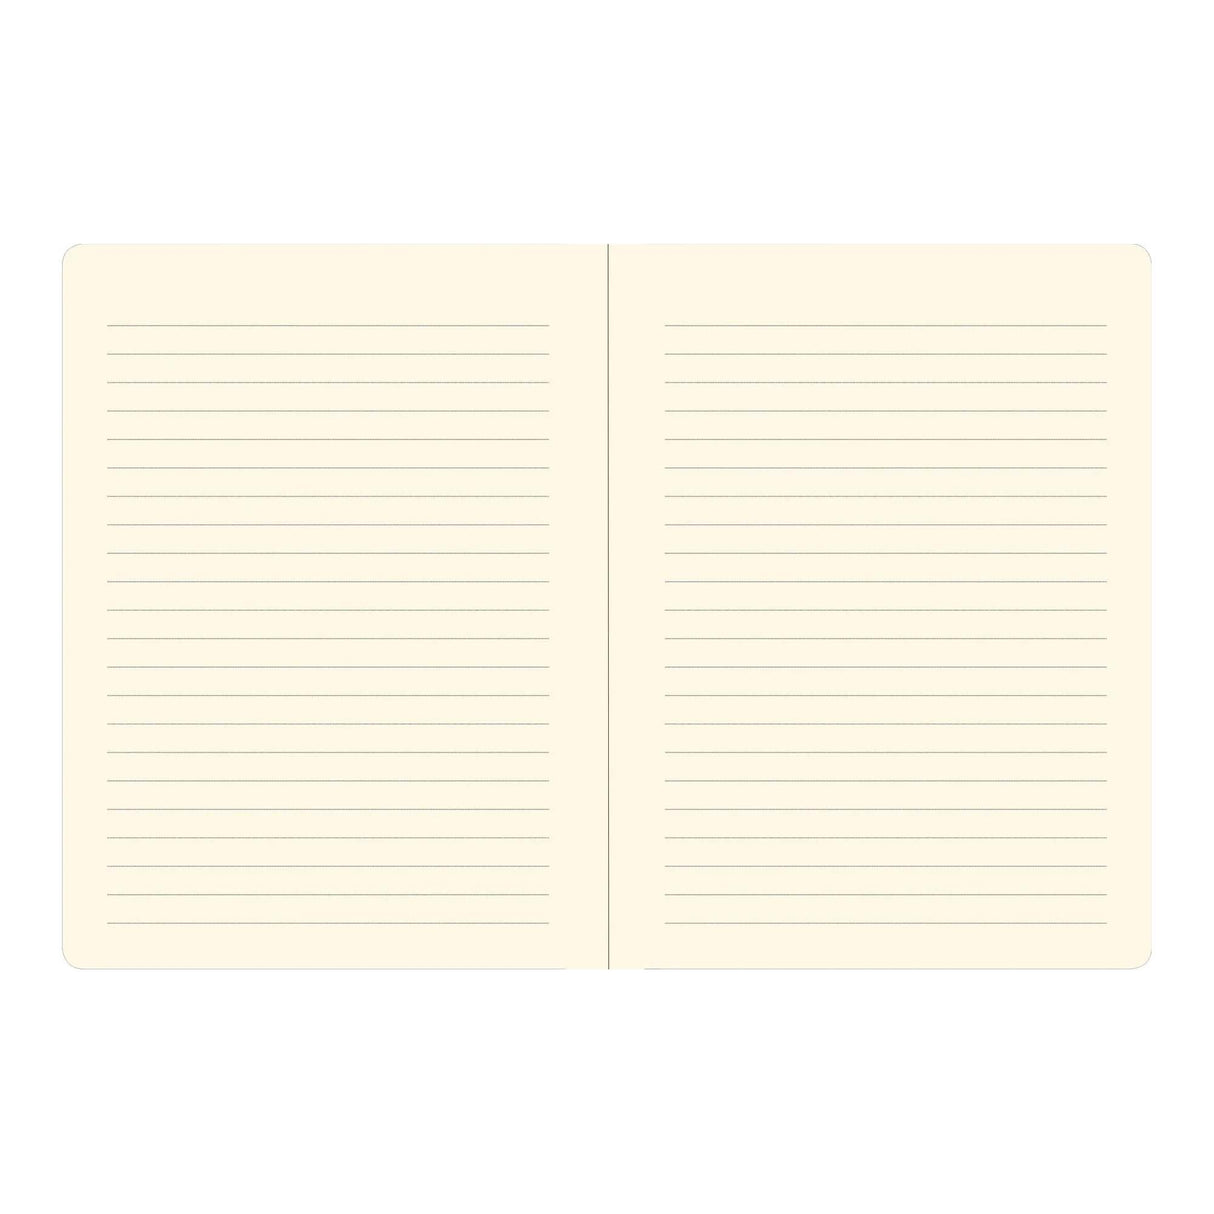 Luna Moth Journal Notebook - Lined